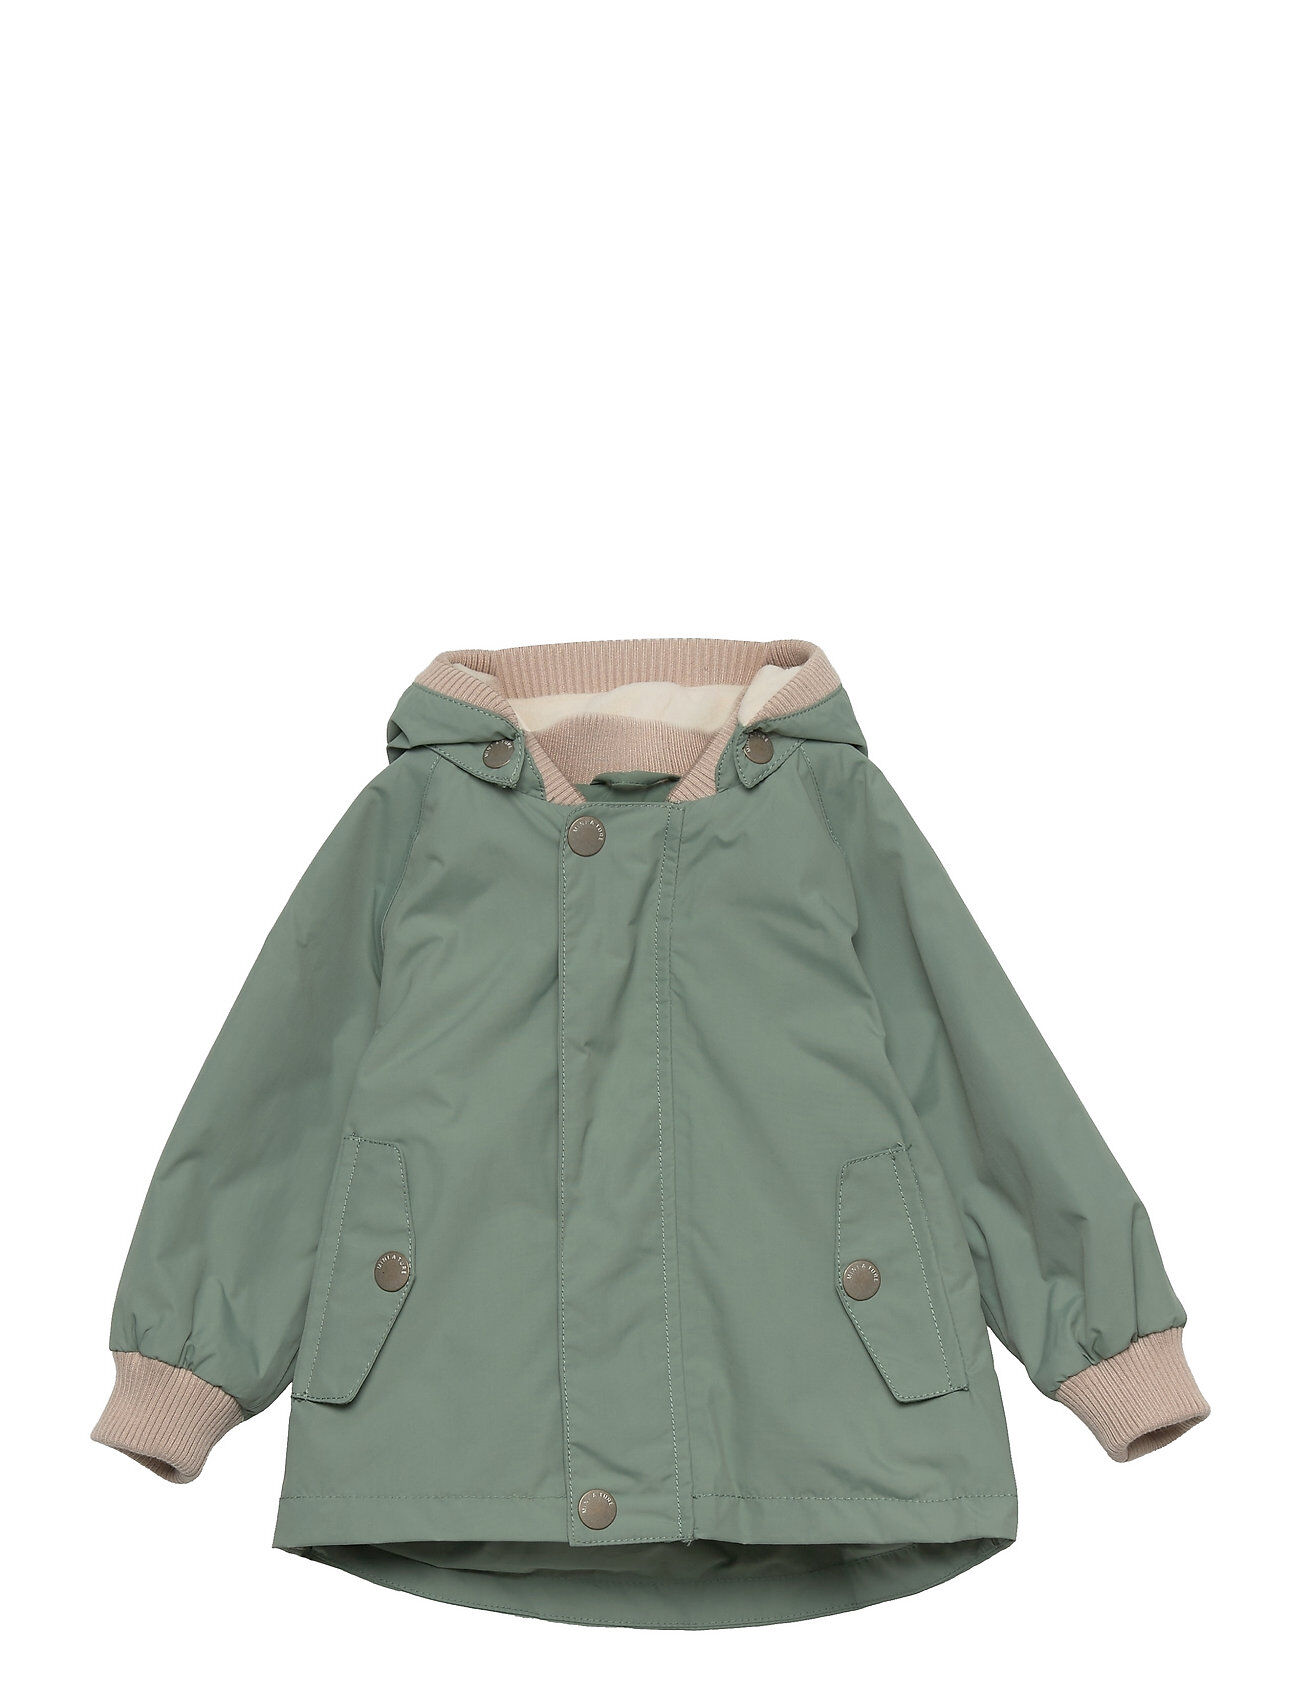 Mini A Ture Wally Jacket Fleece, M Outerwear Shell Clothing Shell Jacket Grønn Mini A Ture